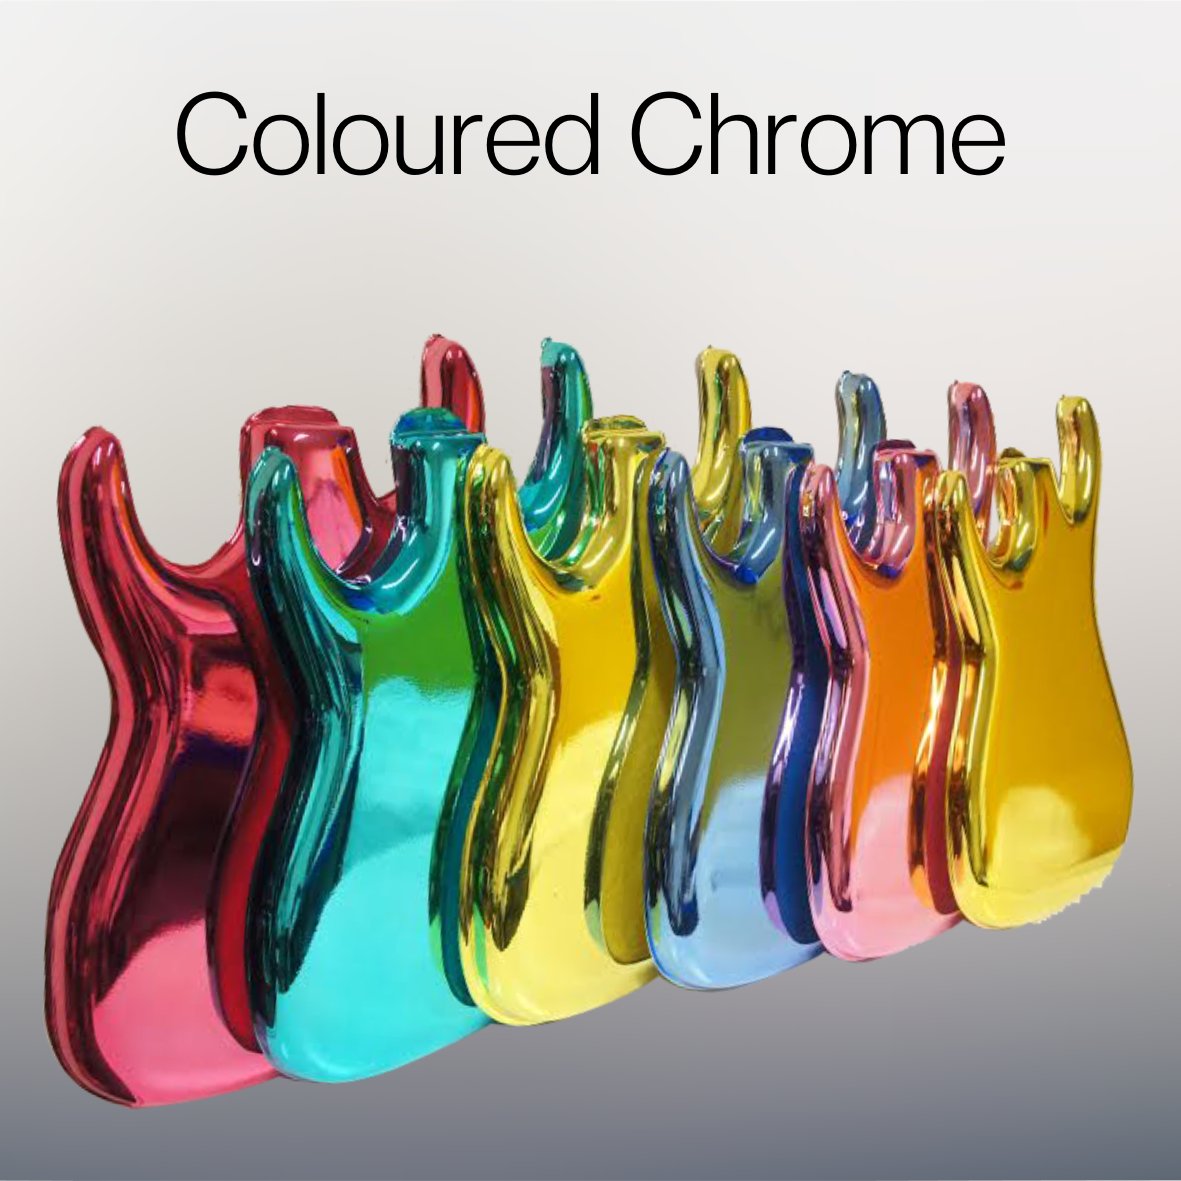 Coloured Chrome Paint